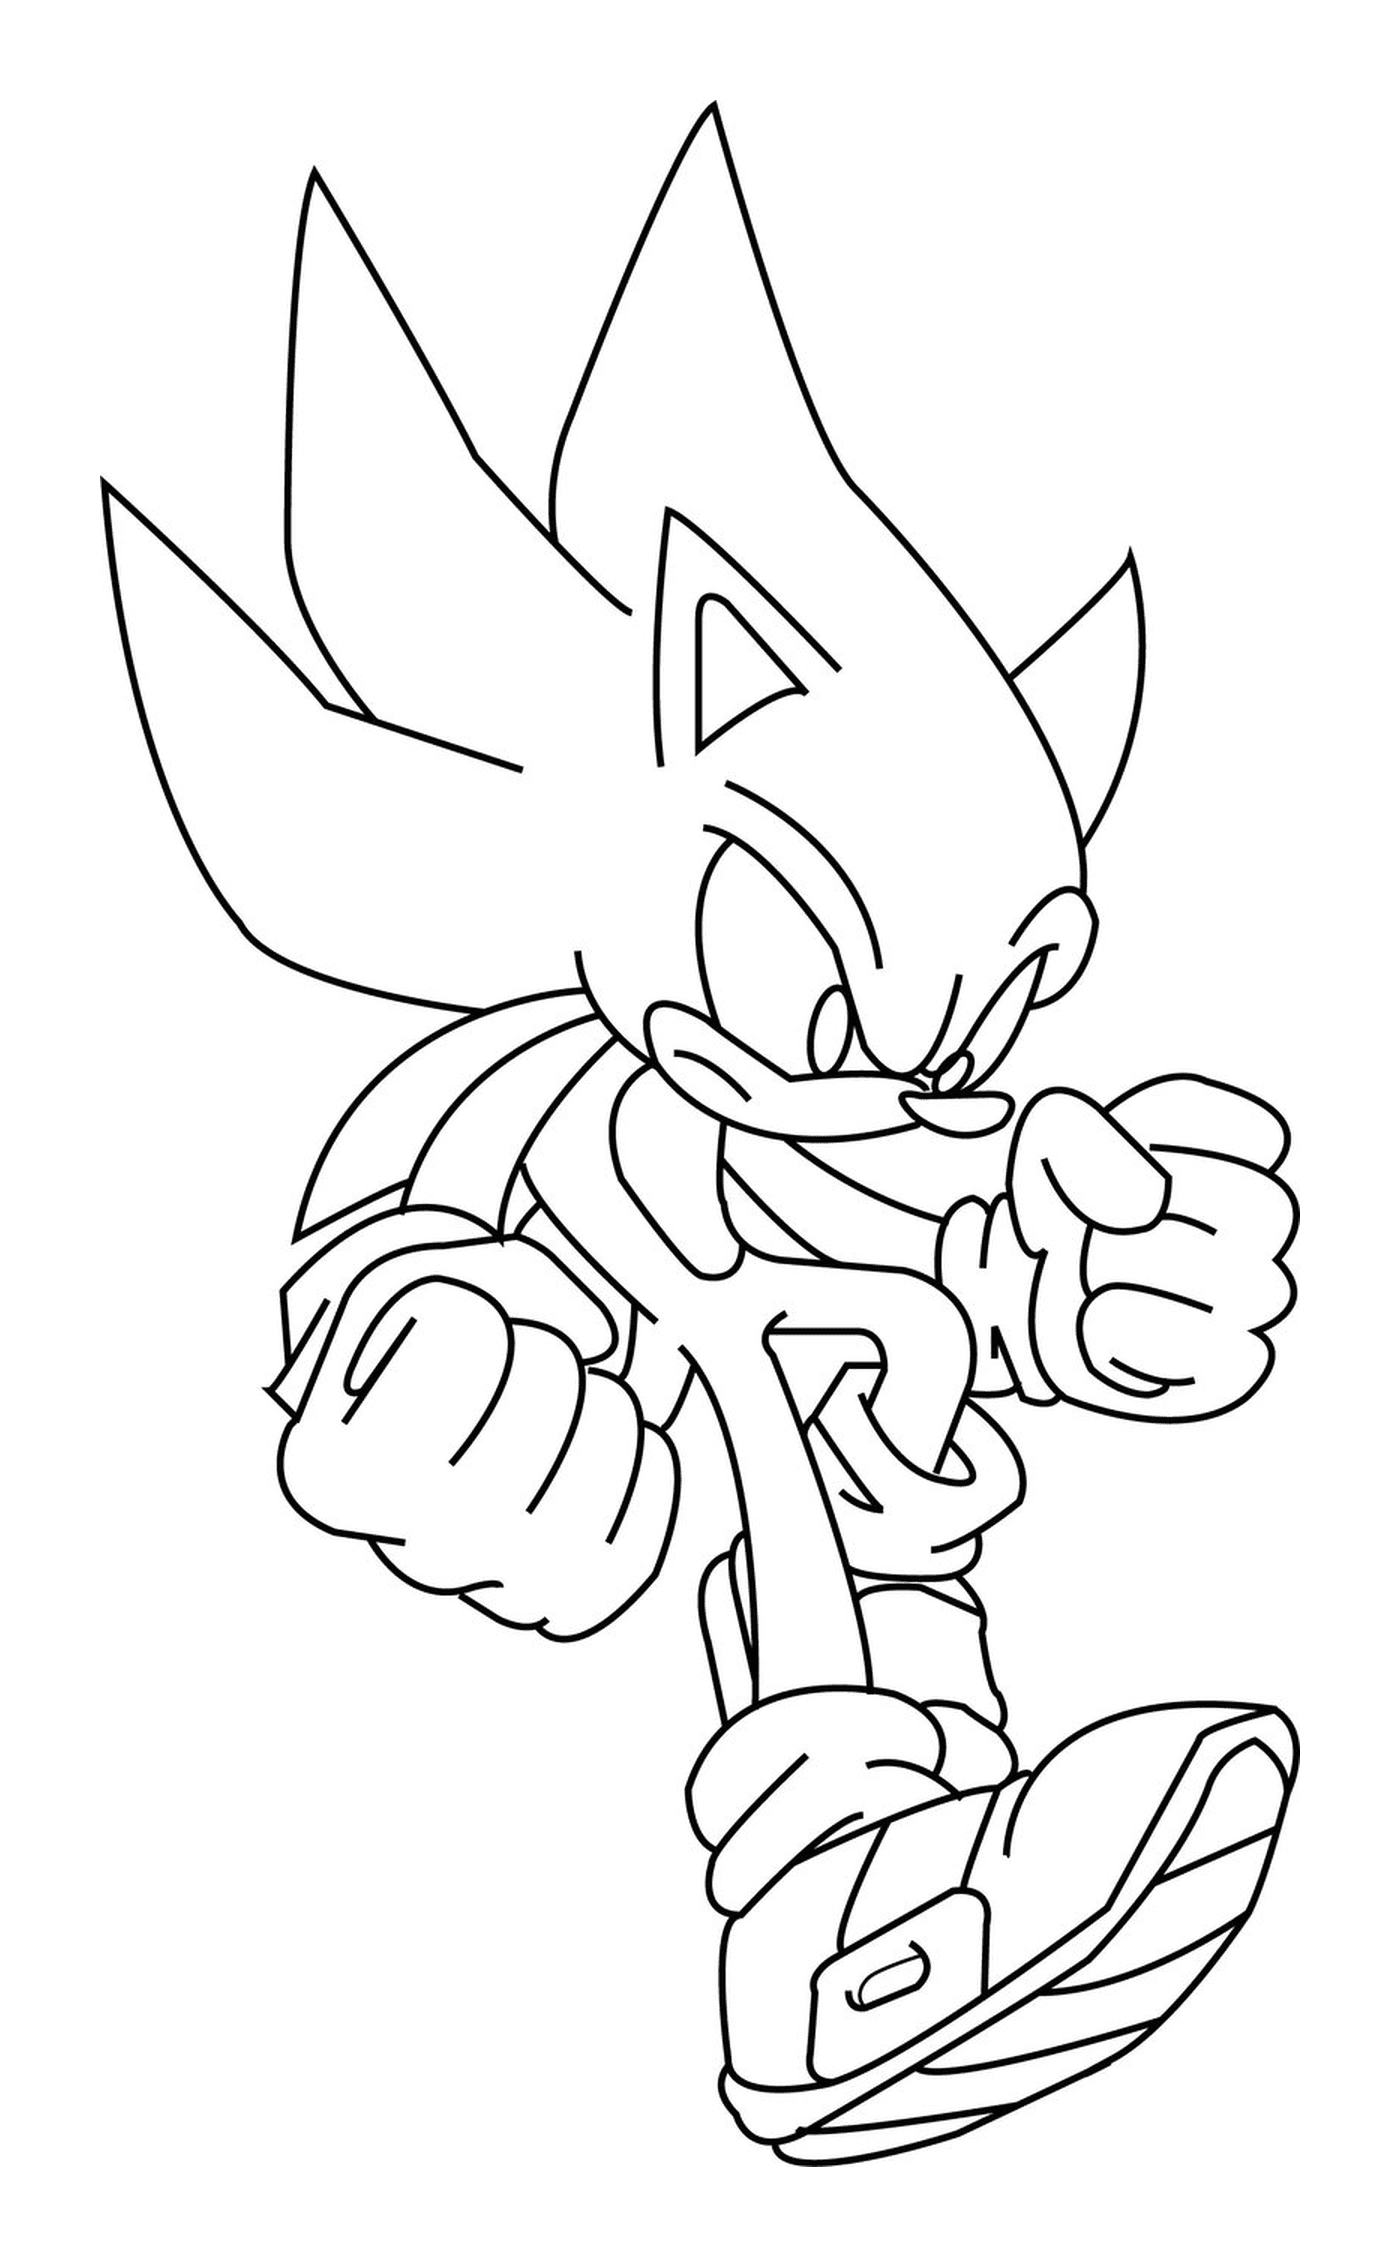  Potente e veloce Sonic 